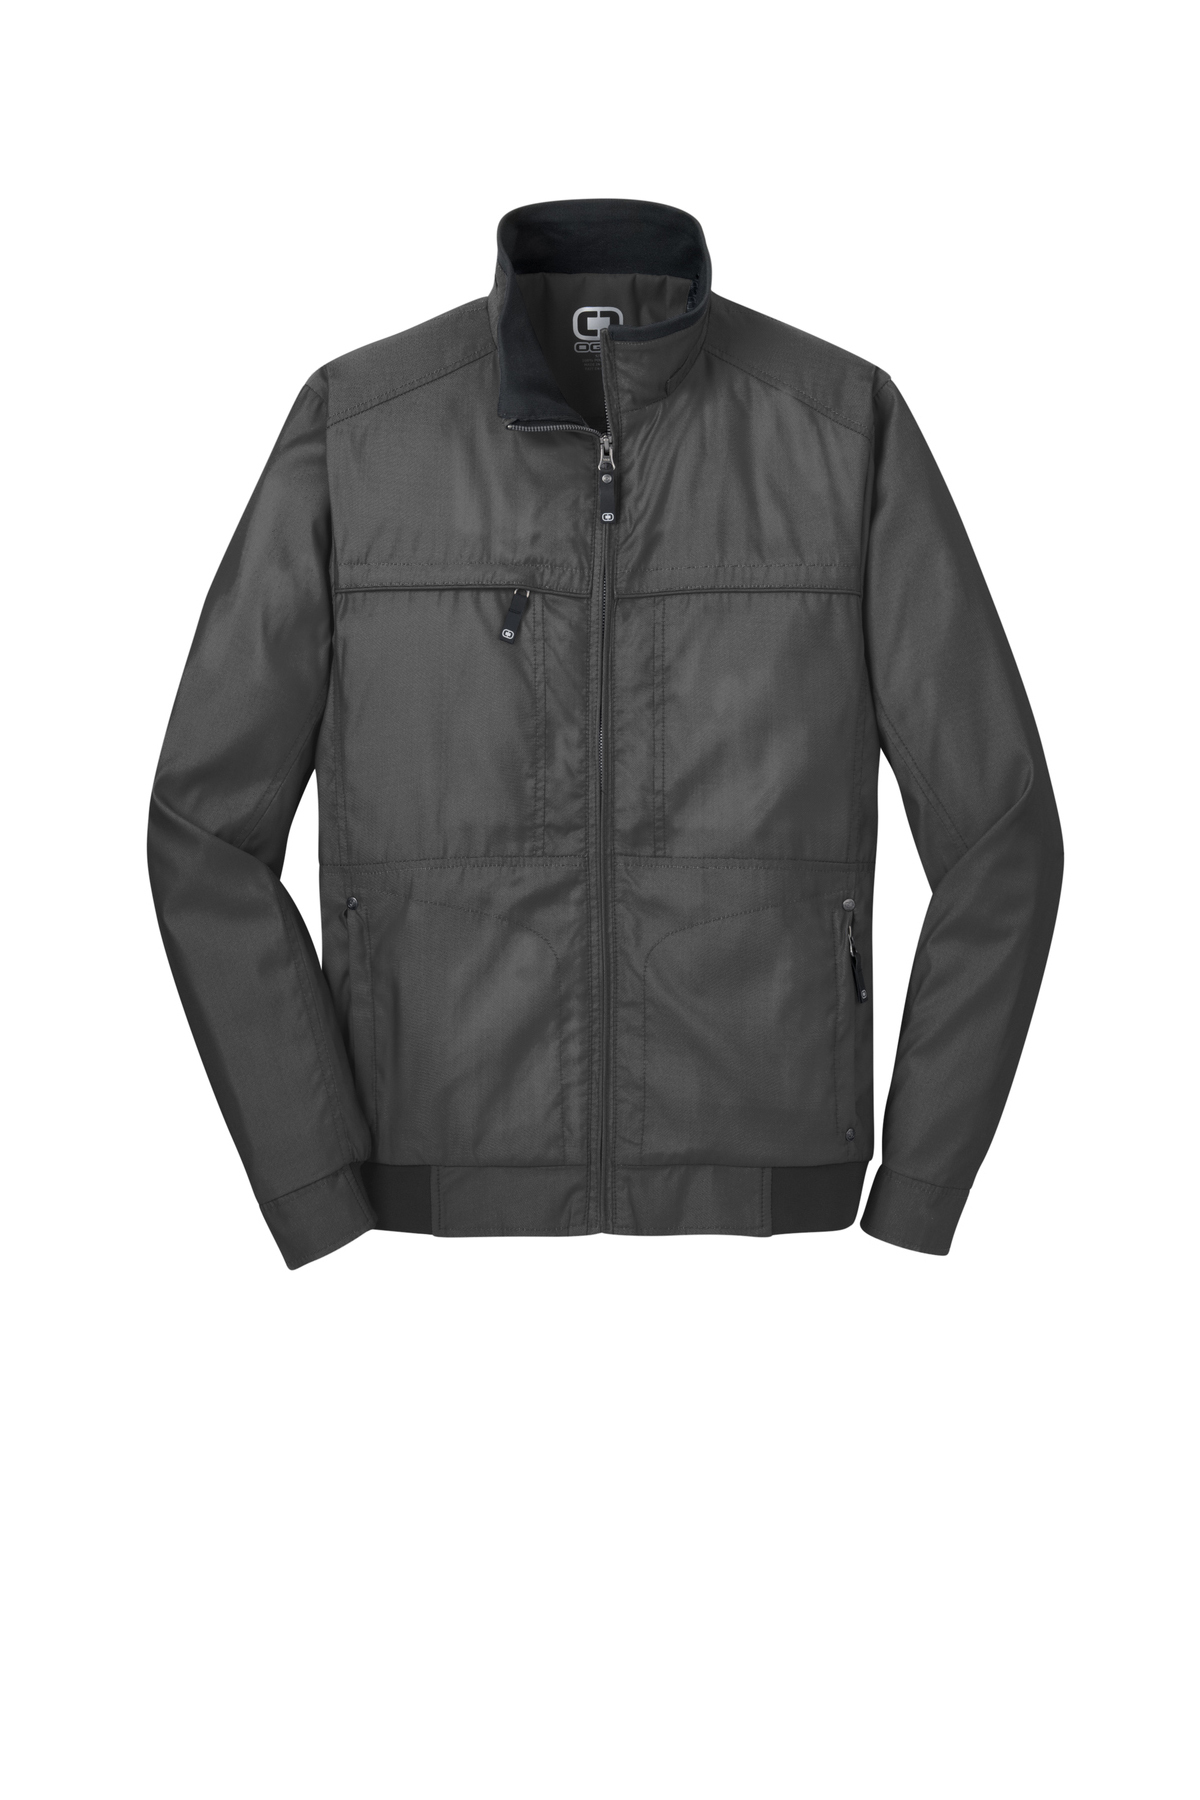 OGIO Quarry Jacket | Product | SanMar